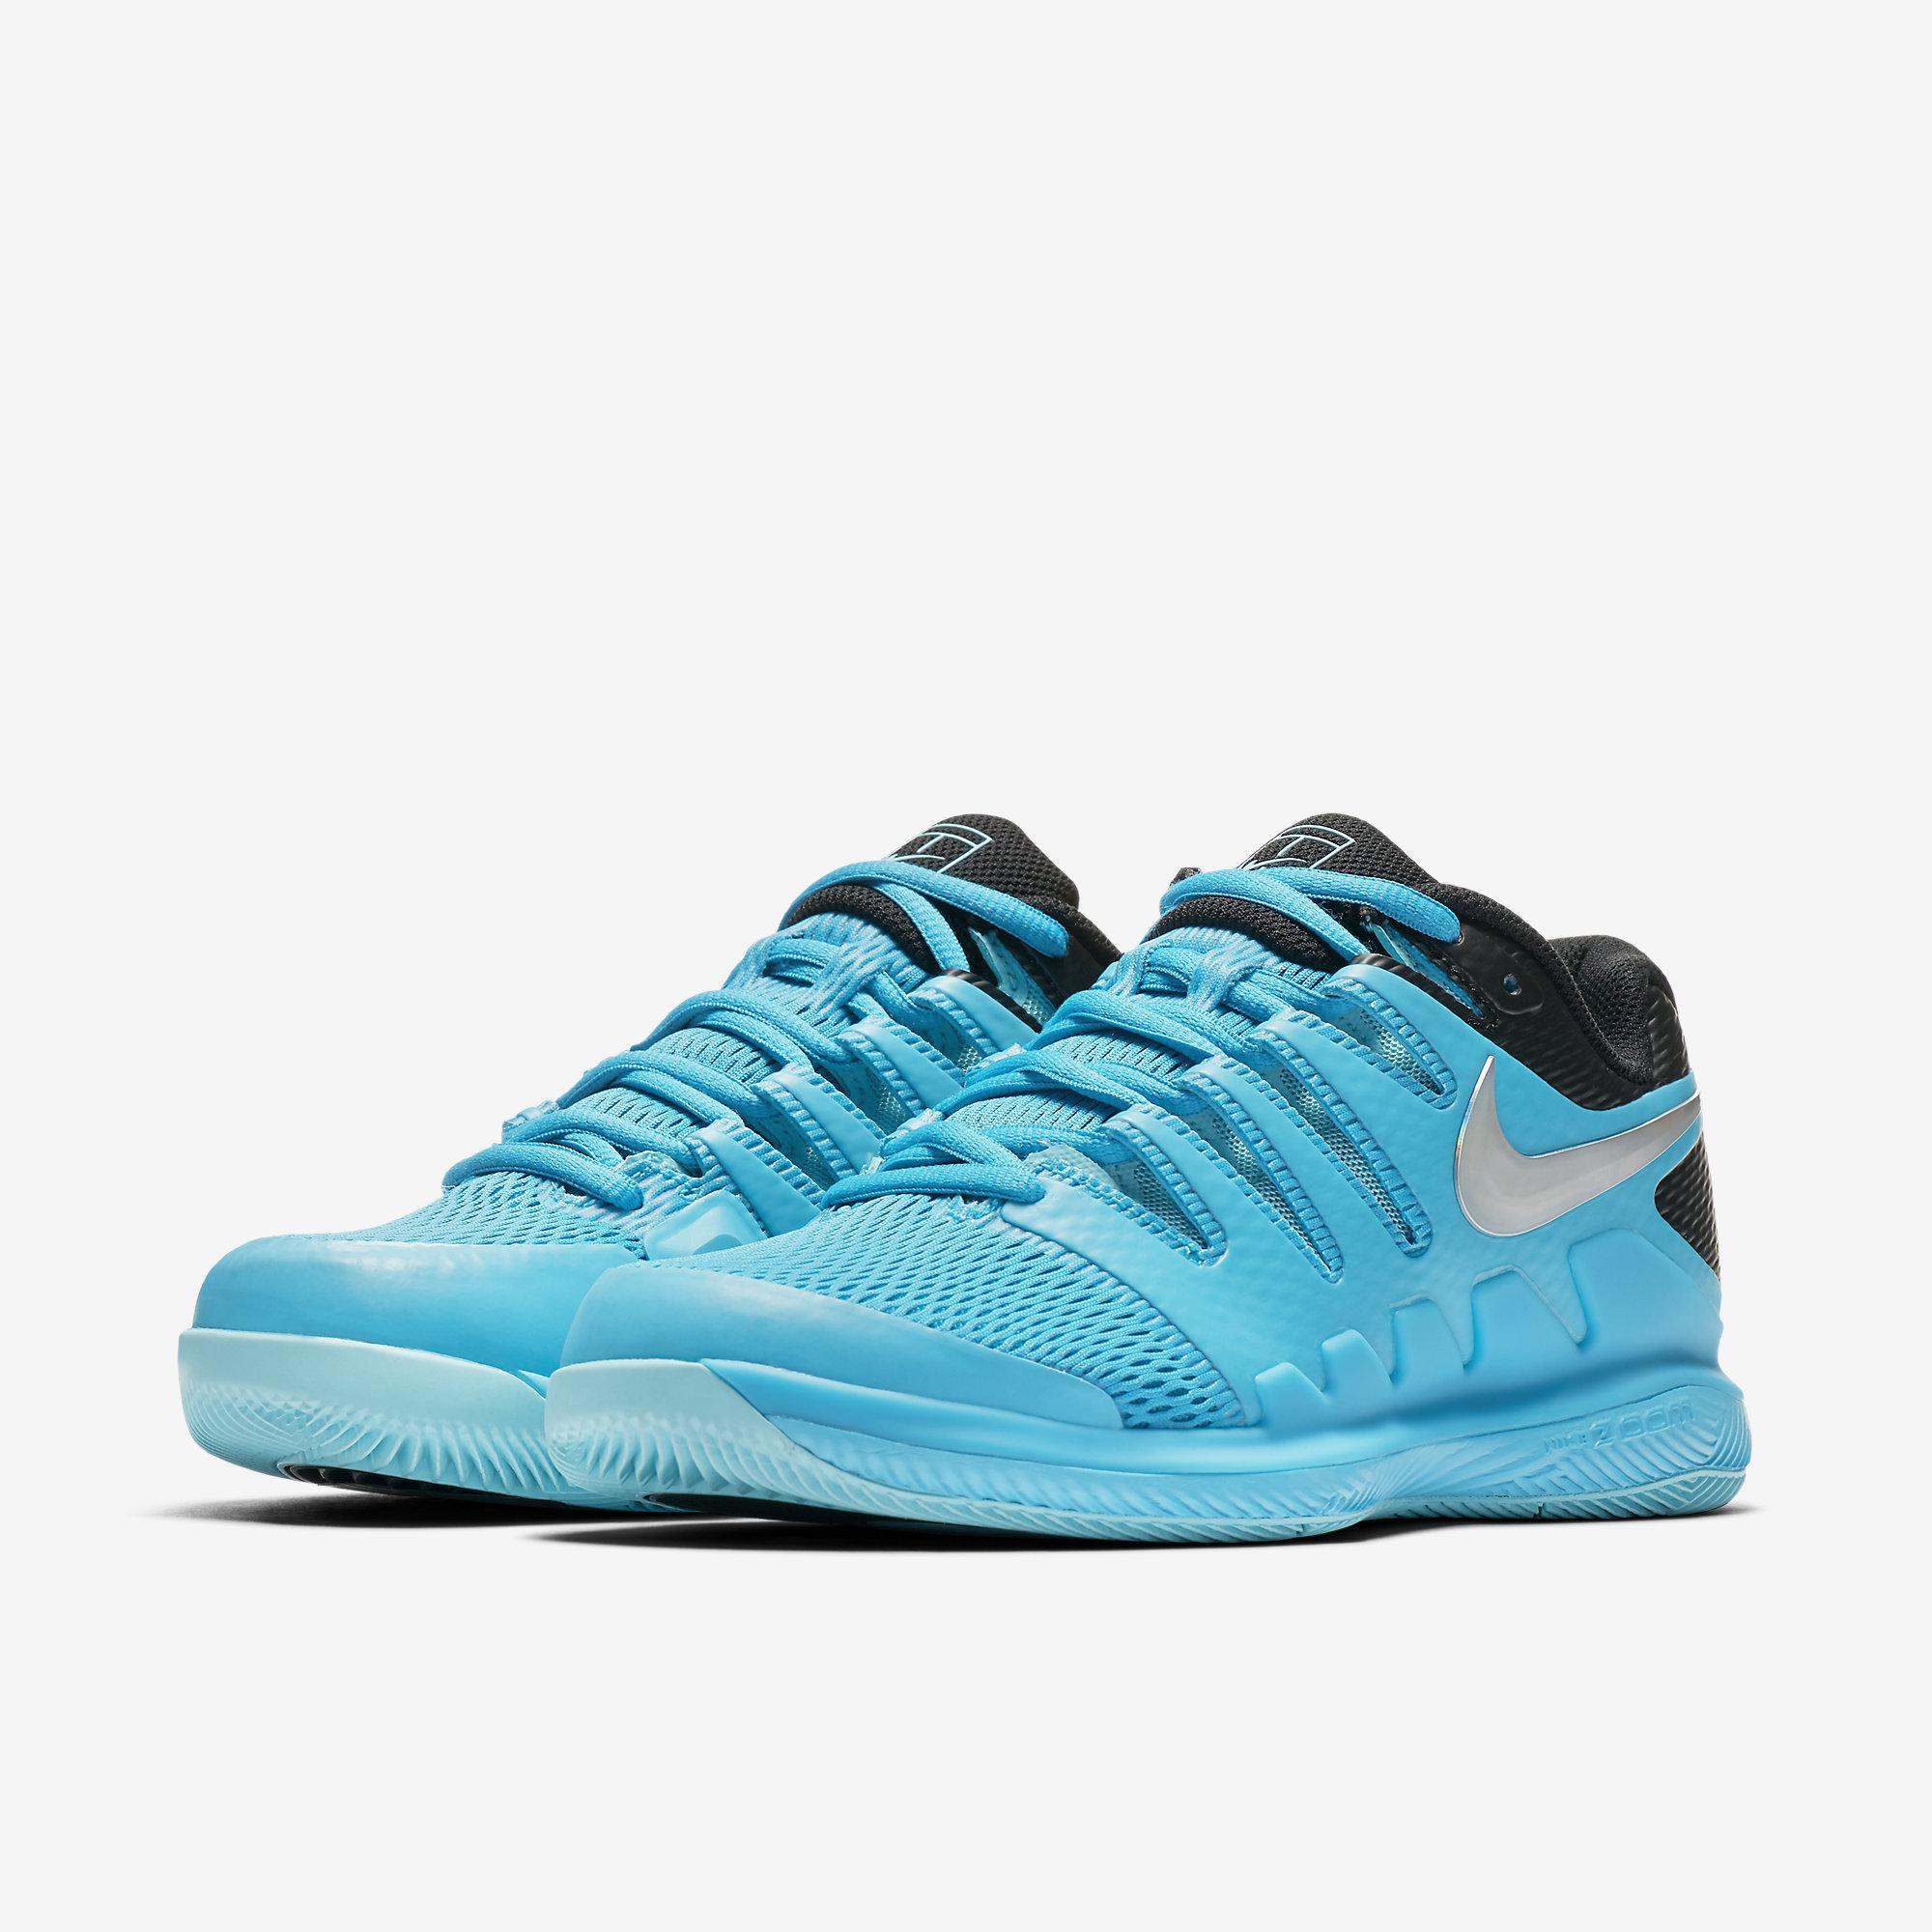 Nike Womens Air Zoom Vapor X Tennis Shoes - Light Blue Fury/Black ...